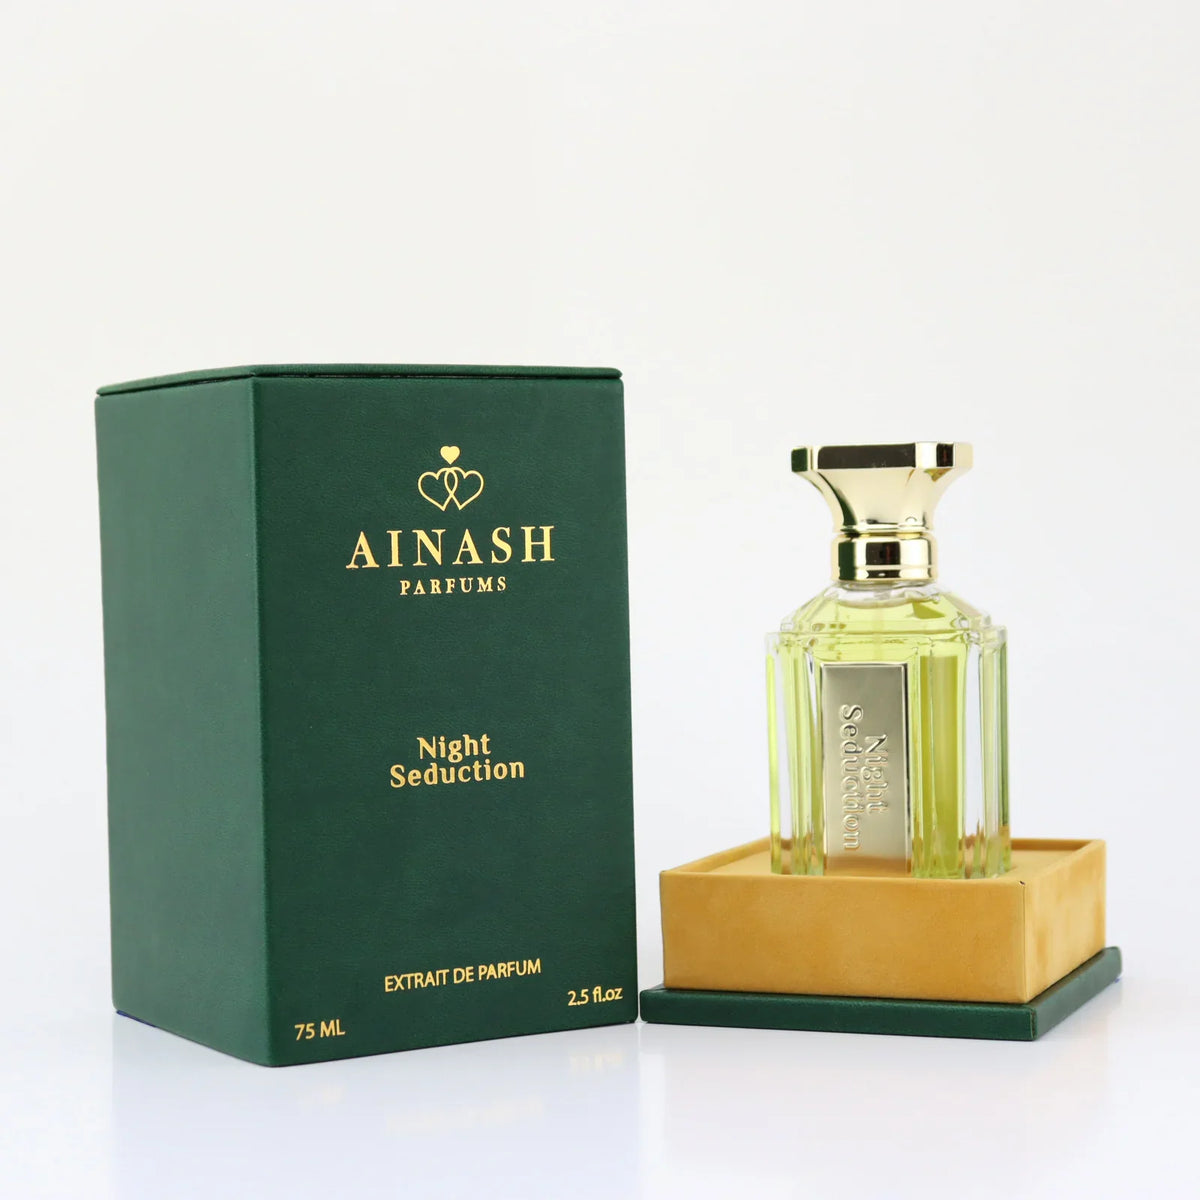 Night Seduction by Ainash Parfums - ANAU STORE WHOLESALE